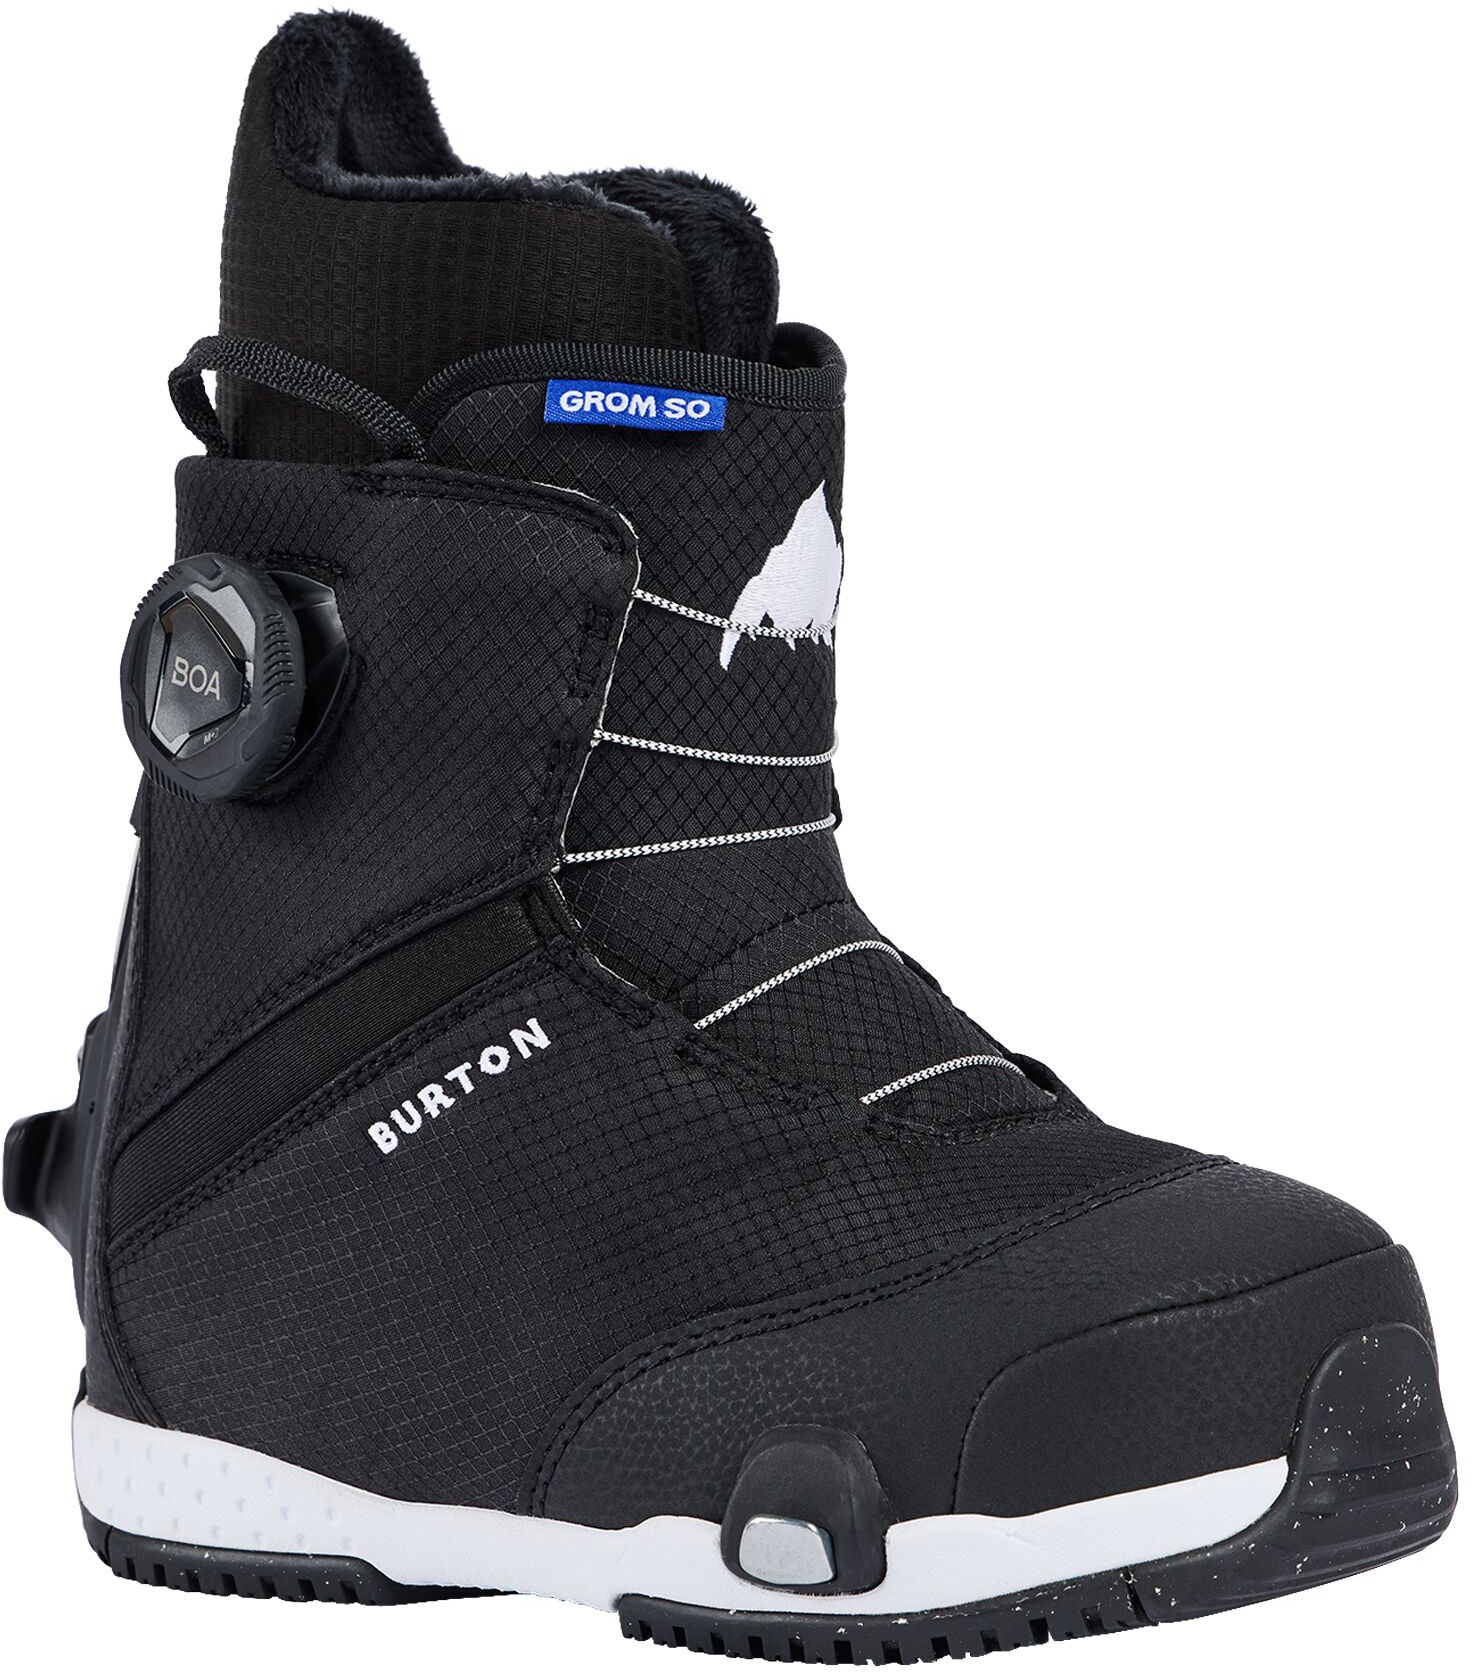 Ботинки для сноуборда Grom Step On - Детские - 2023/2024 Burton, черный детские сноубордические ботинки burton grom boa р 12c white